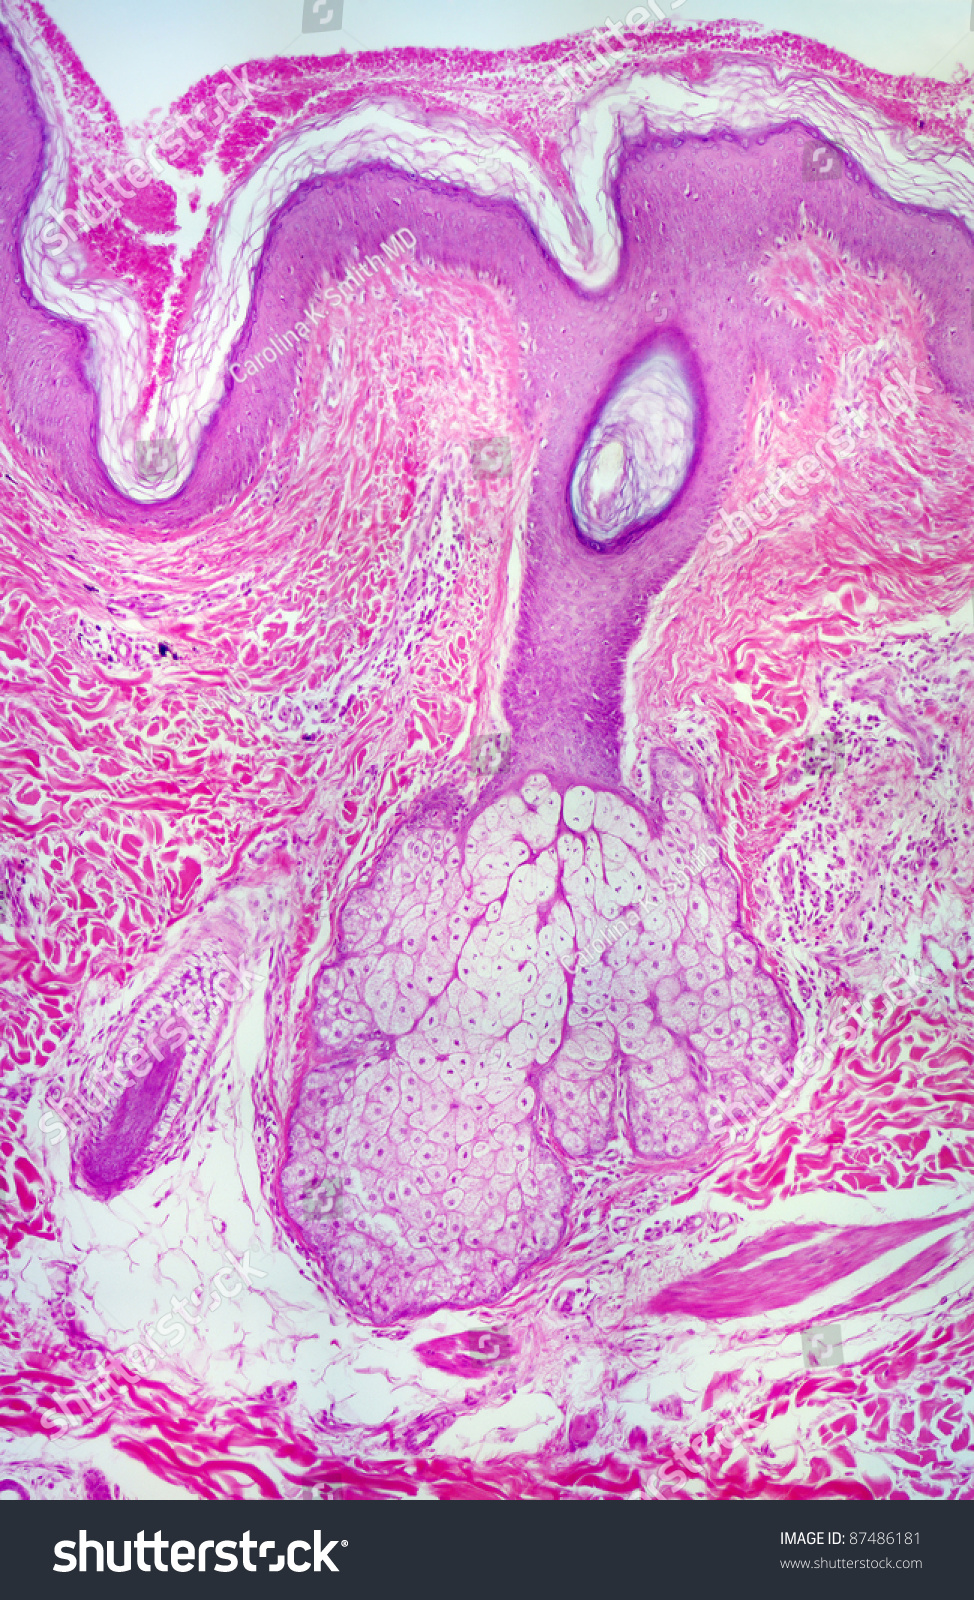 Sebaceous Gland Histology Labeled